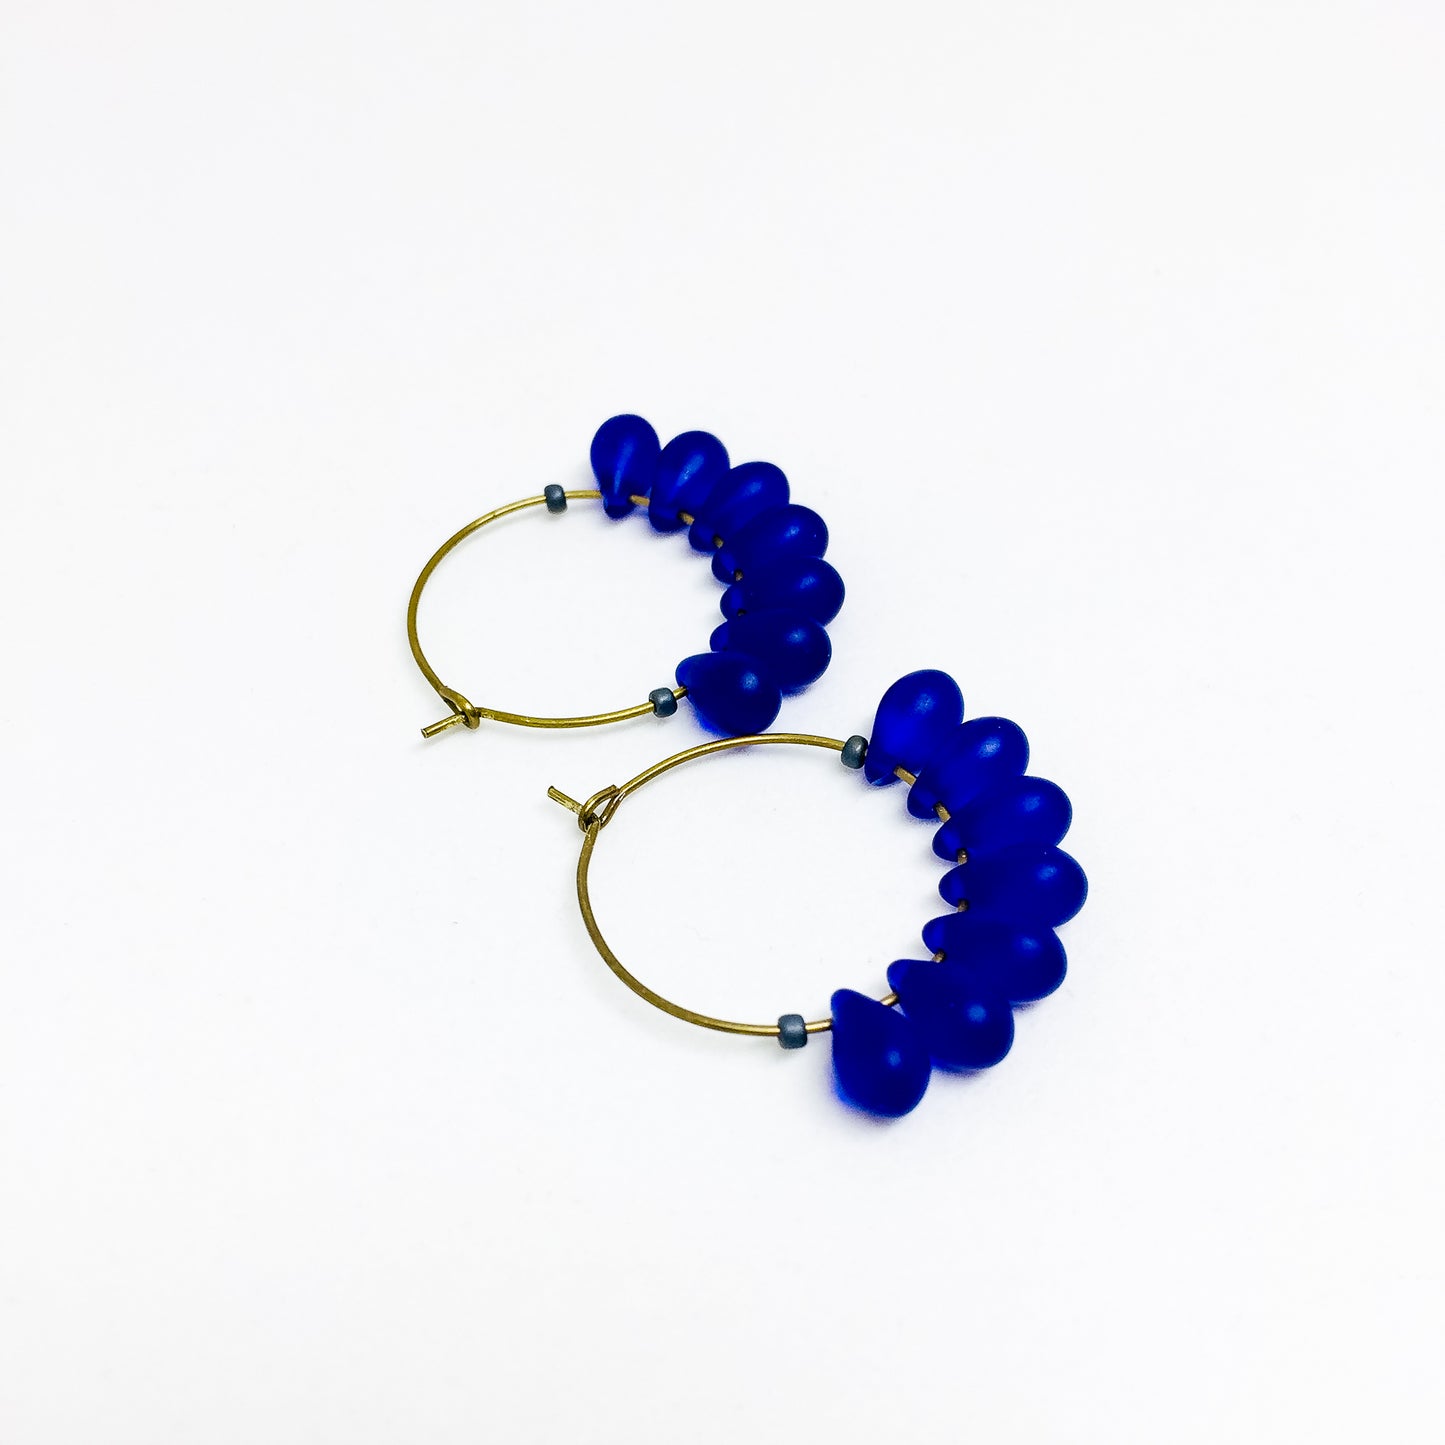 Dewdrop beaded glass hoop earrings in cobalt blue